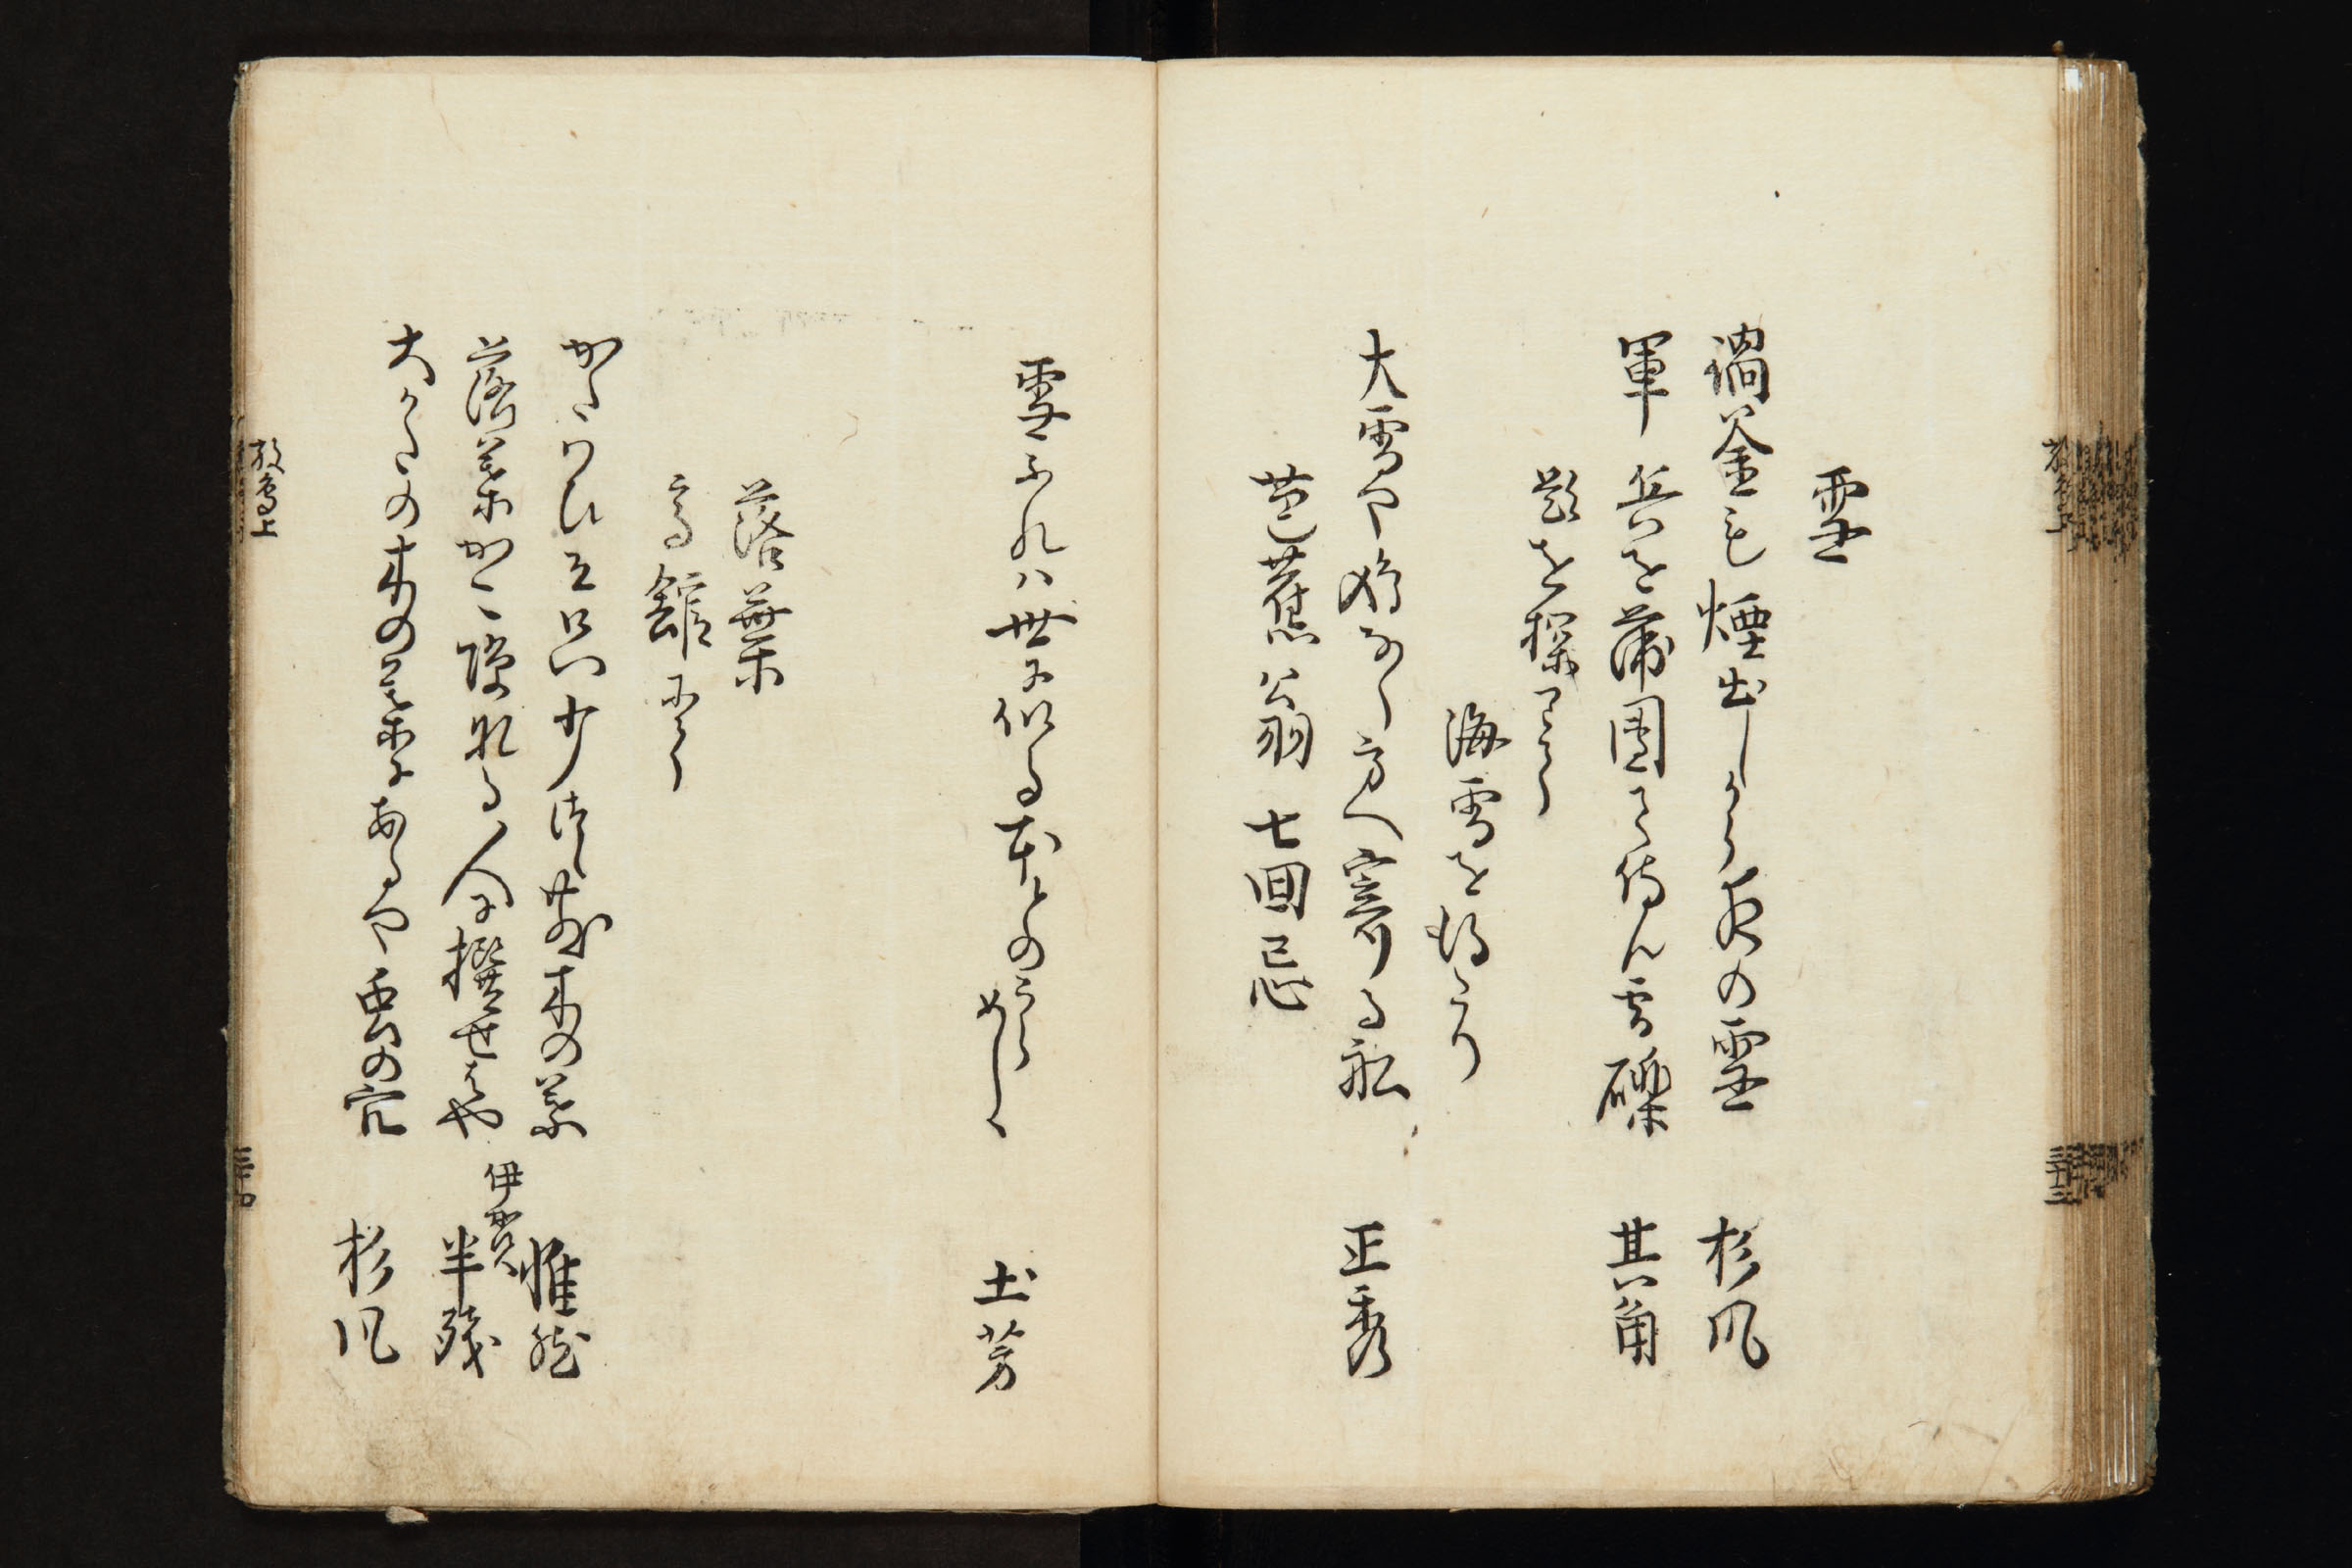 放鳥集 1 - 0035 - 愛知県立大学図書館 貴重書コレクション